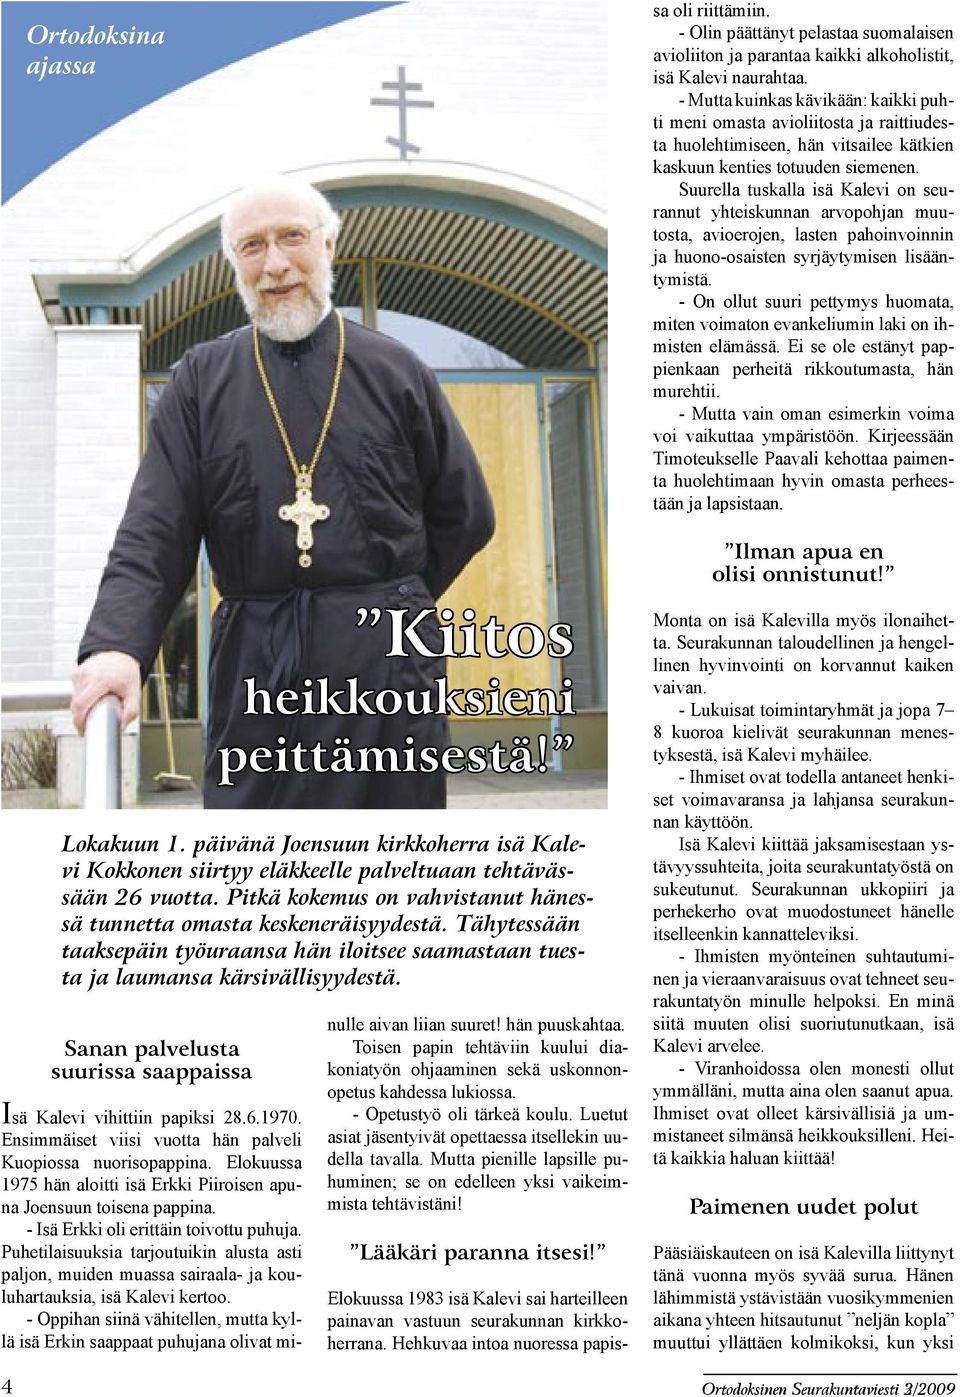 Tähytessään taaksepäin työuraansa hän iloitsee saamastaan tuesta ja laumansa kärsivällisyydestä. Isä Kalevi vihittiin papiksi 28.6.1970. Ensimmäiset viisi vuotta hän palveli Kuopiossa nuorisopappina.